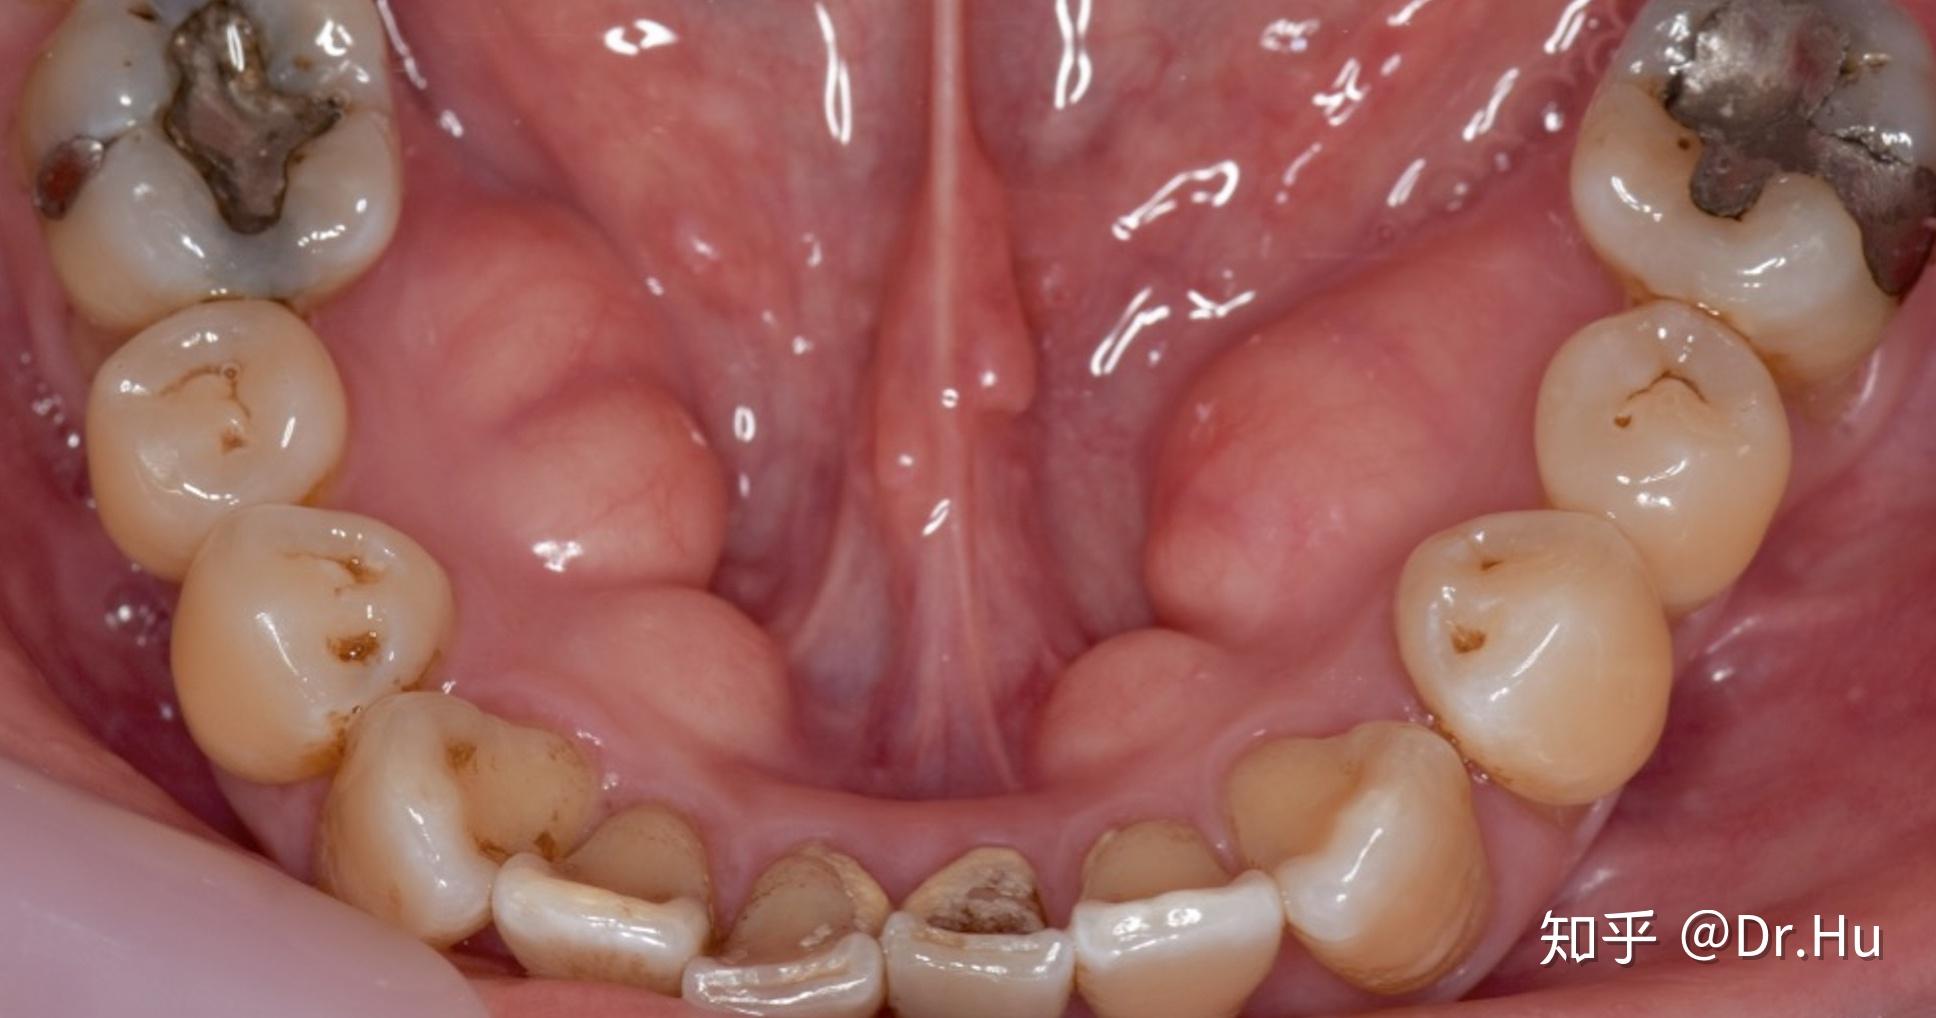 下牙龈处下颚内测左右两边各有一个鼓包是什么,知乎有专家知道吗?